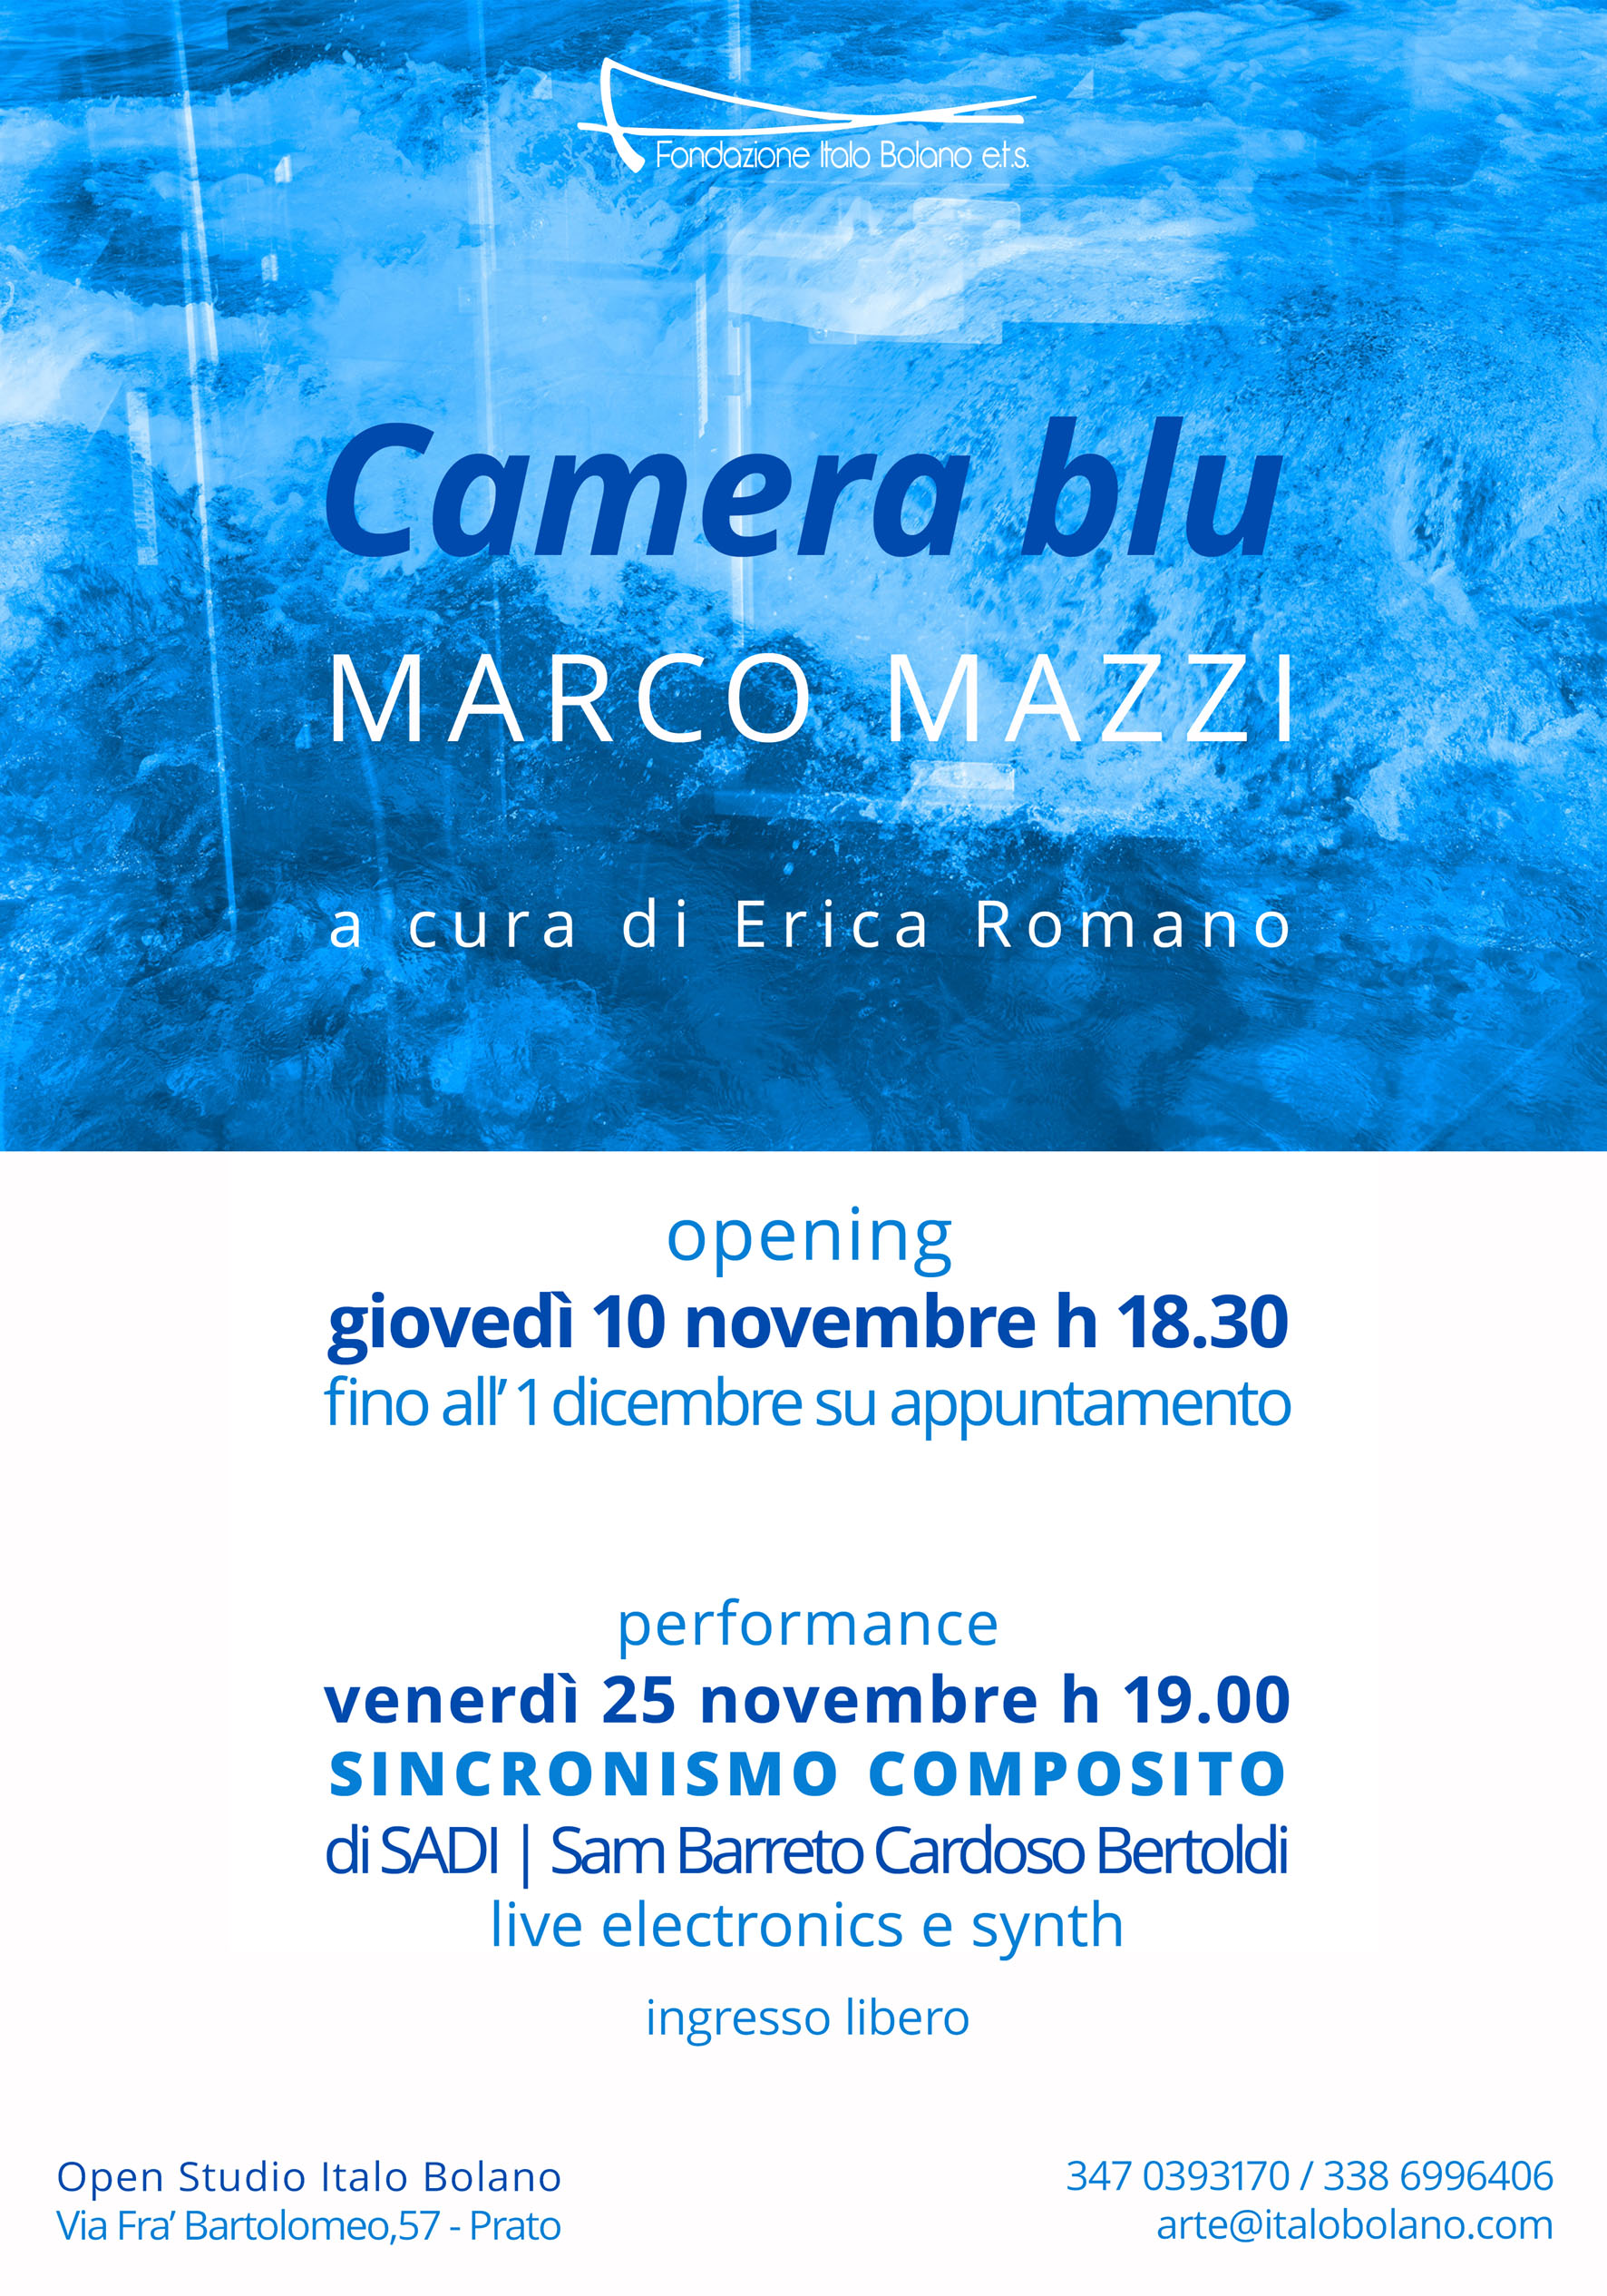 Marco Mazzi – Camera blu